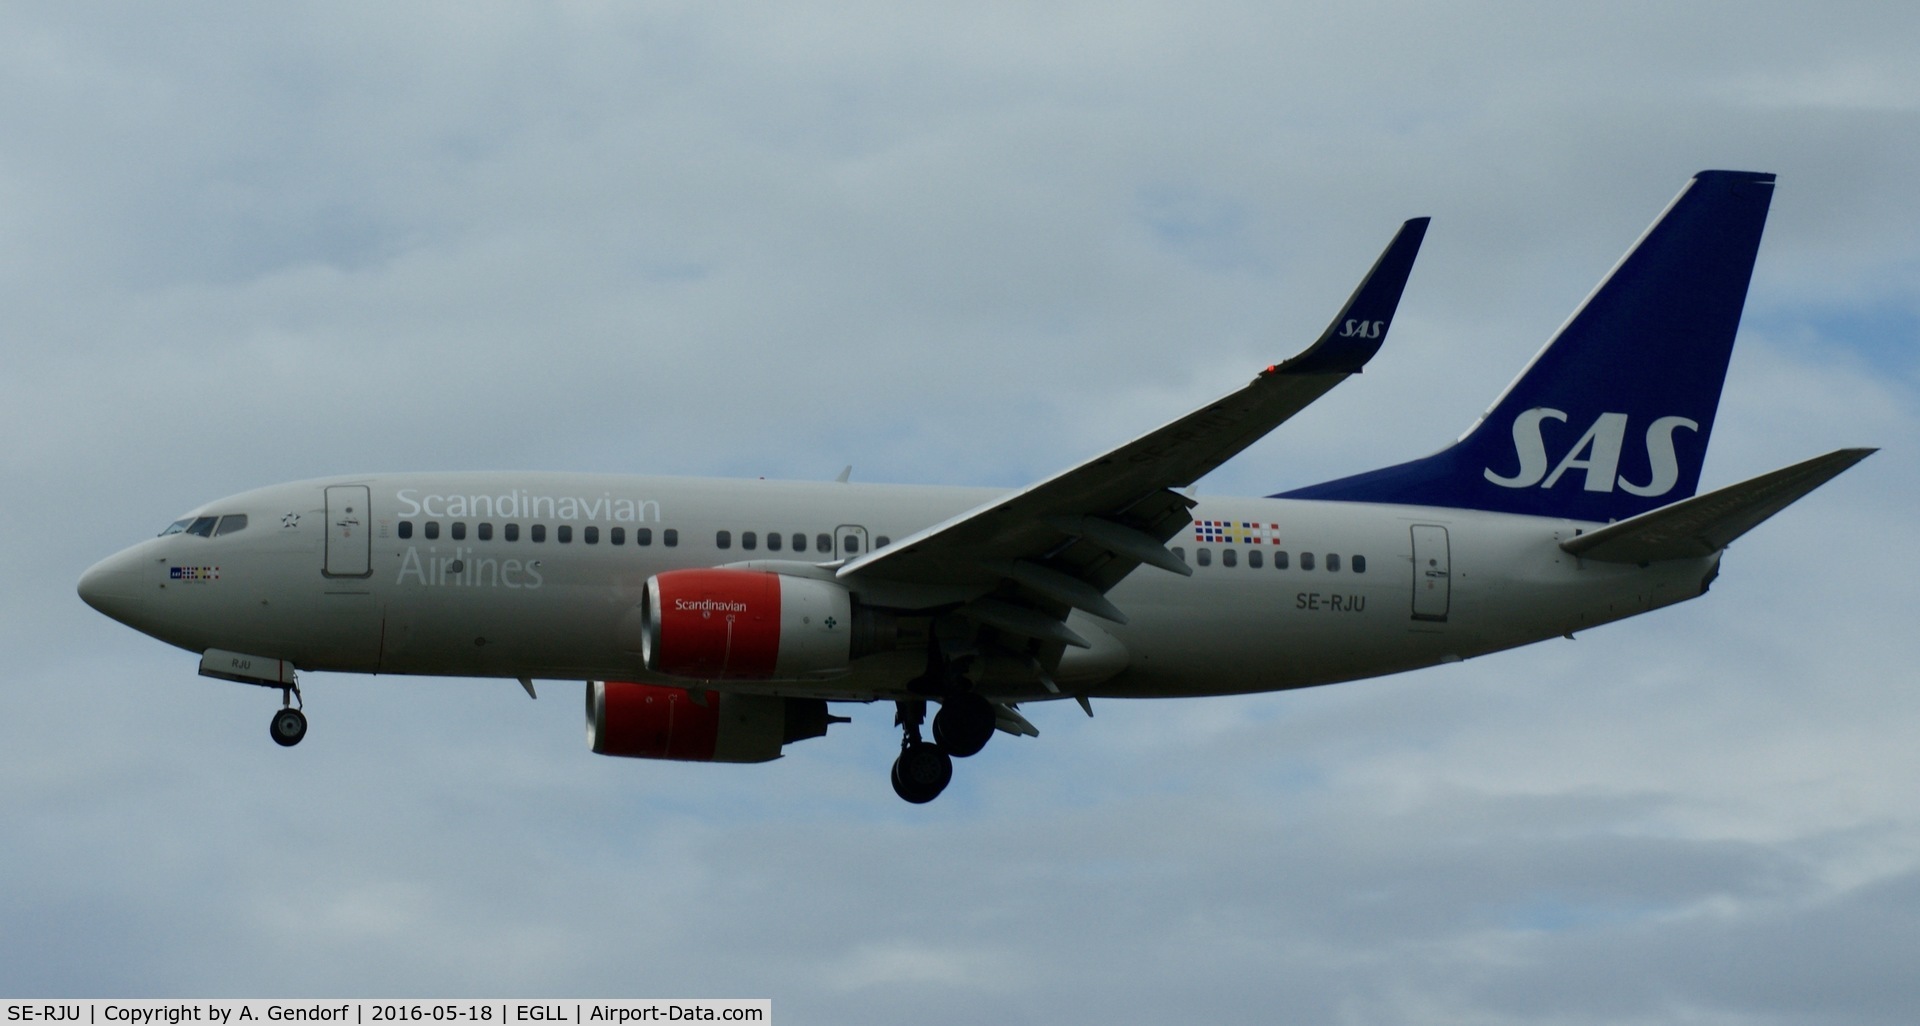 SE-RJU, 2002 Boeing 737-76N C/N 29885, SAS, is here approaching London Heathrow(EGLL)